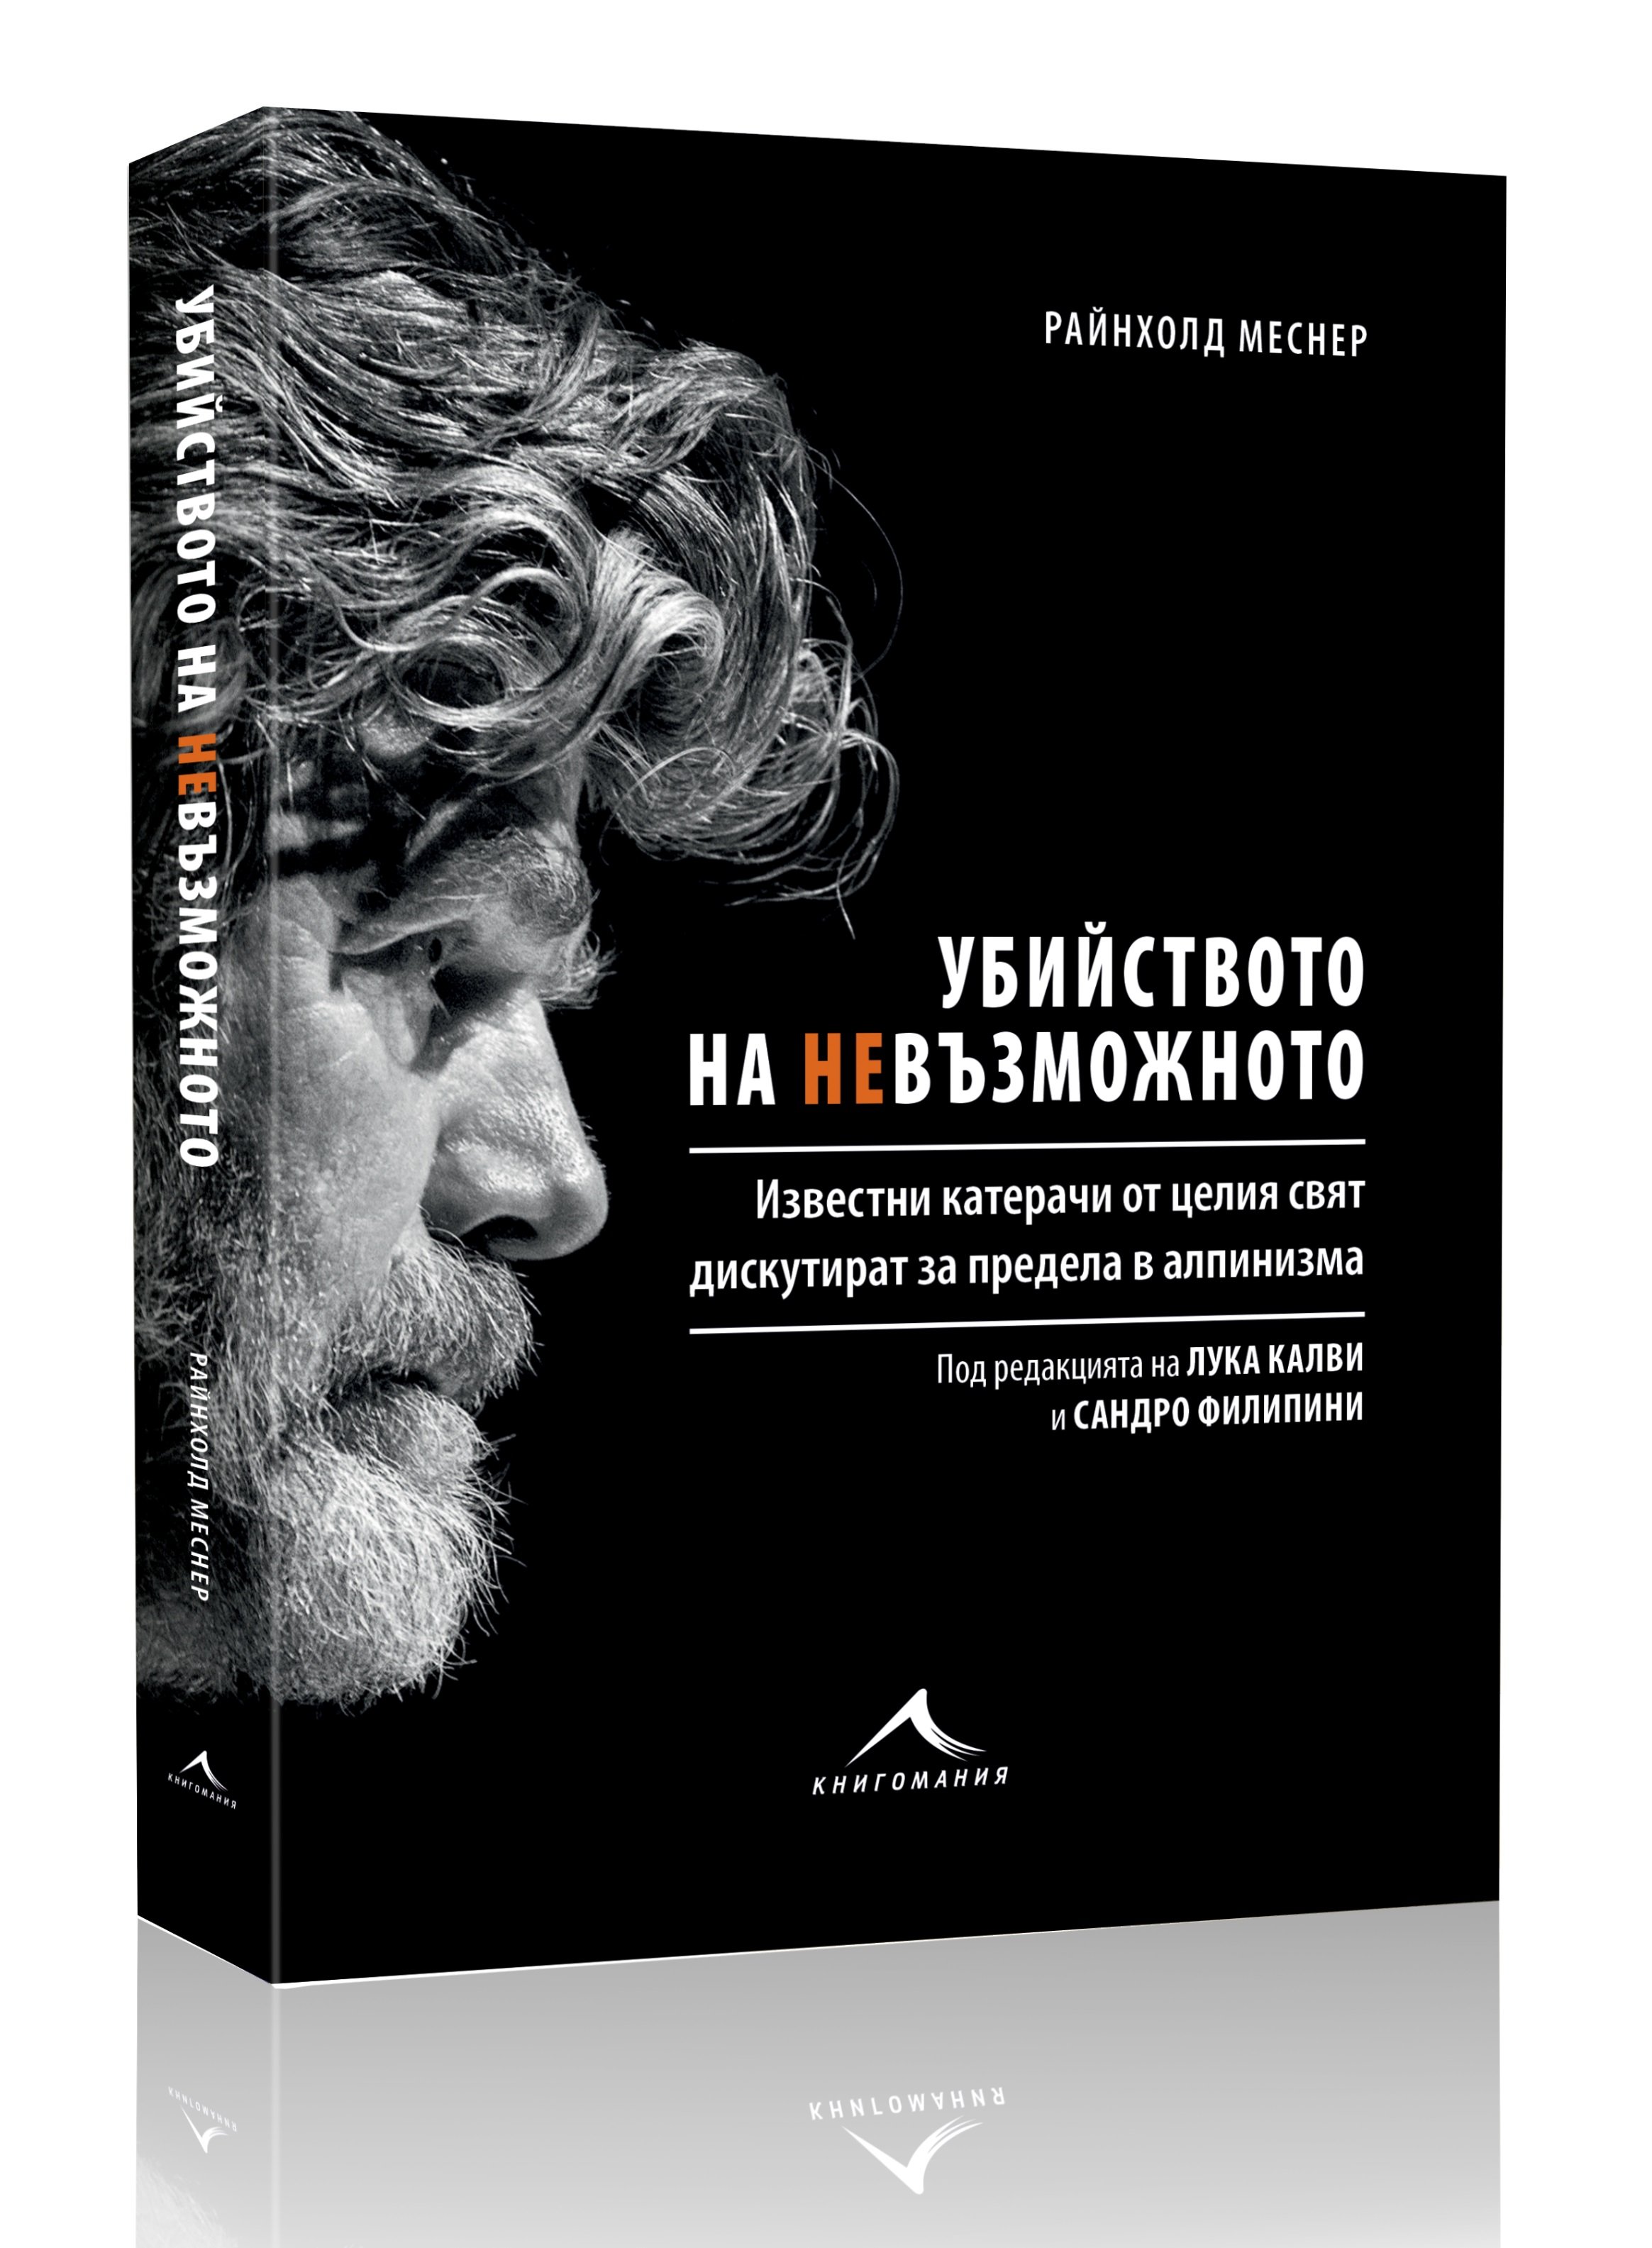 Книгомания издава книга от легендата на алпинизма Райнхолд Меснер, посветена на Боян Петров